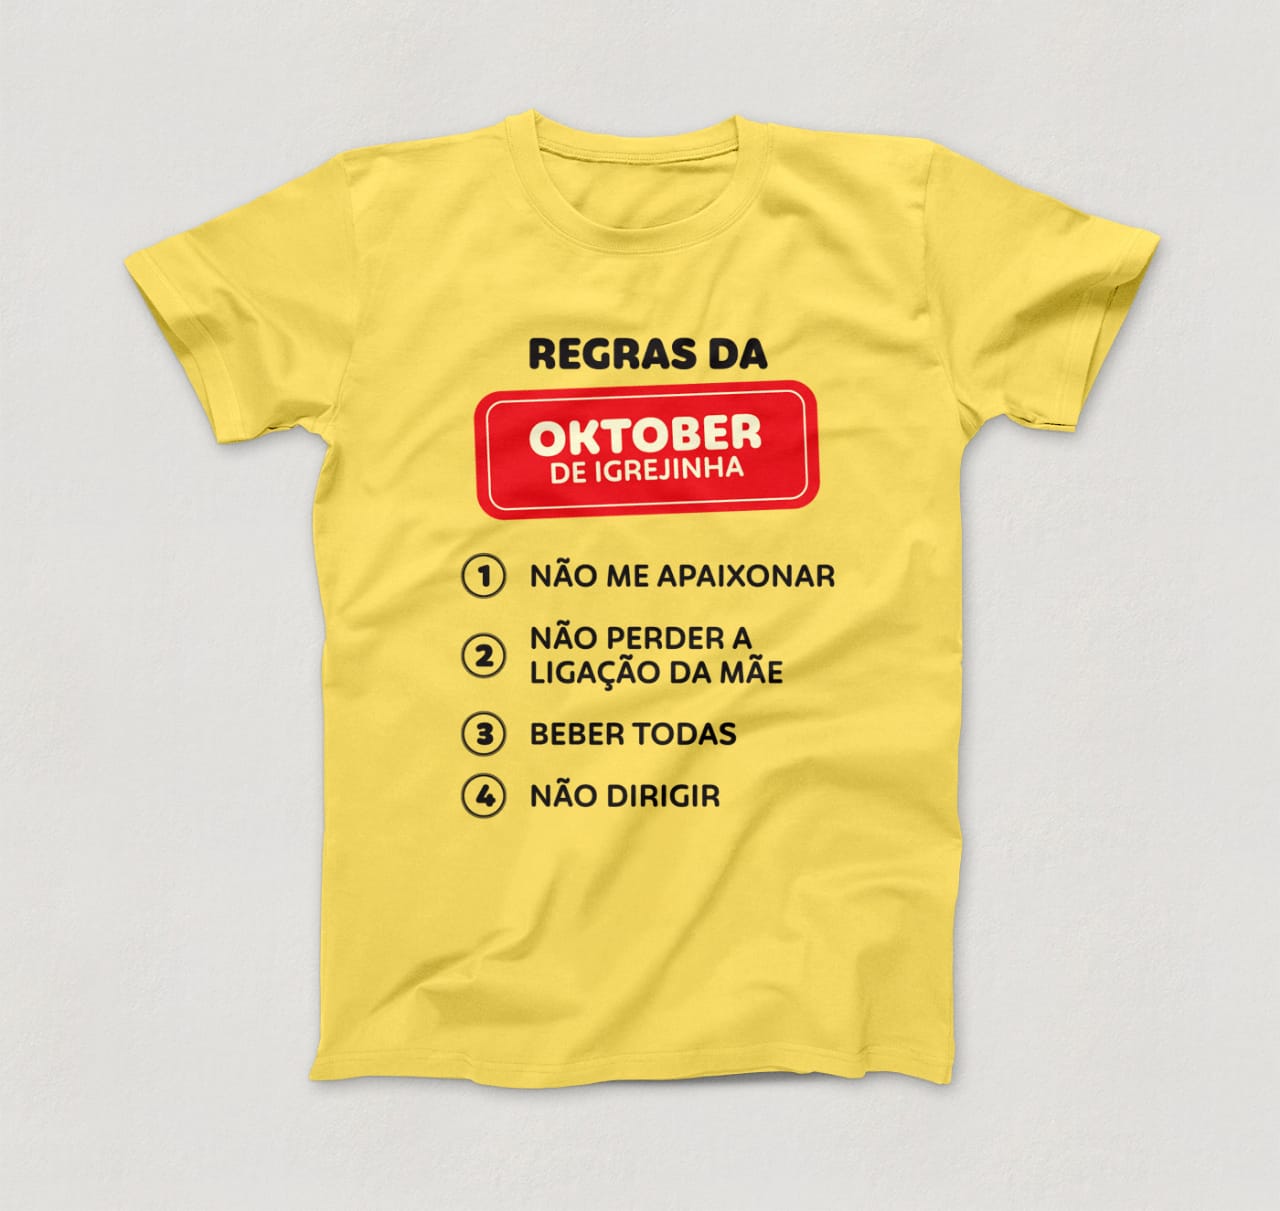 Camisetas divertidas são a novidade nos itens de recordação da Oktober